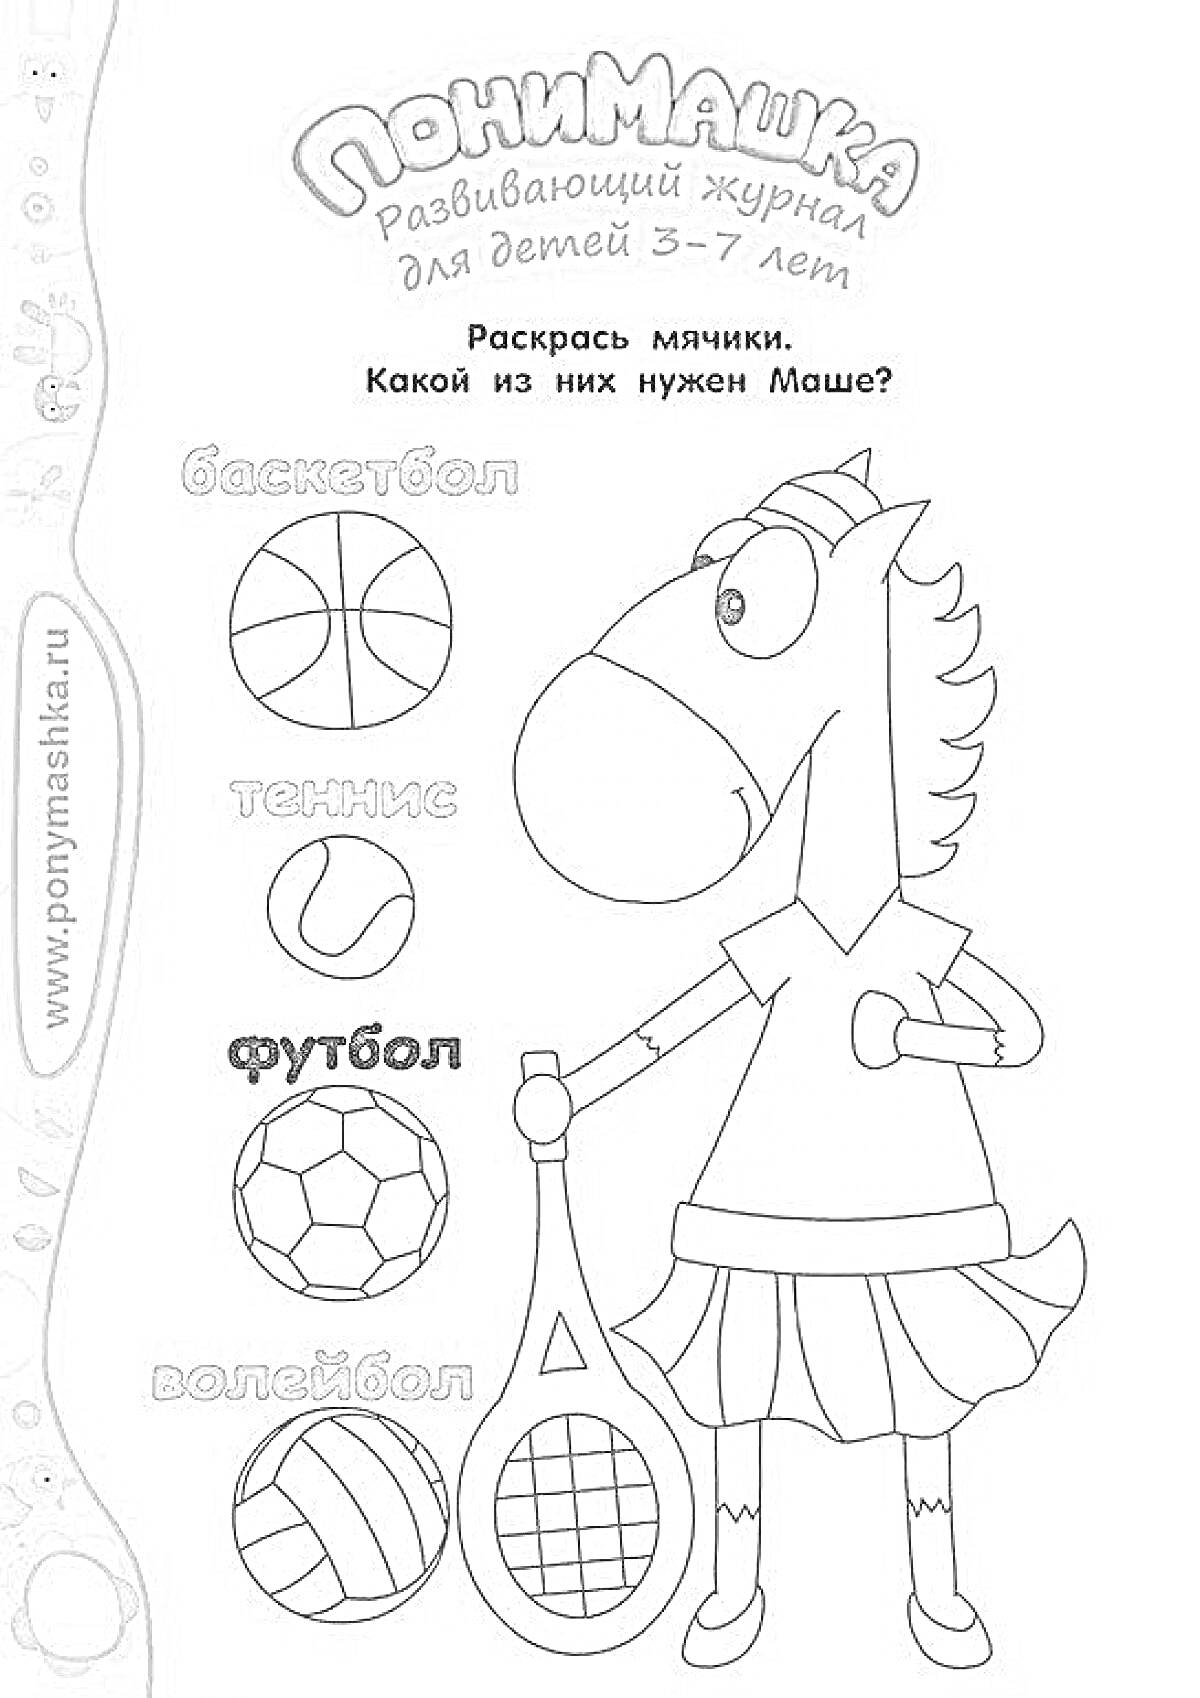 Раскраска ПониМашка развивающий журнал для детей 3-7 лет - Раскрась мячики. Какой из них нужен Маше? Баскетбол, теннис, футбол, волейбол